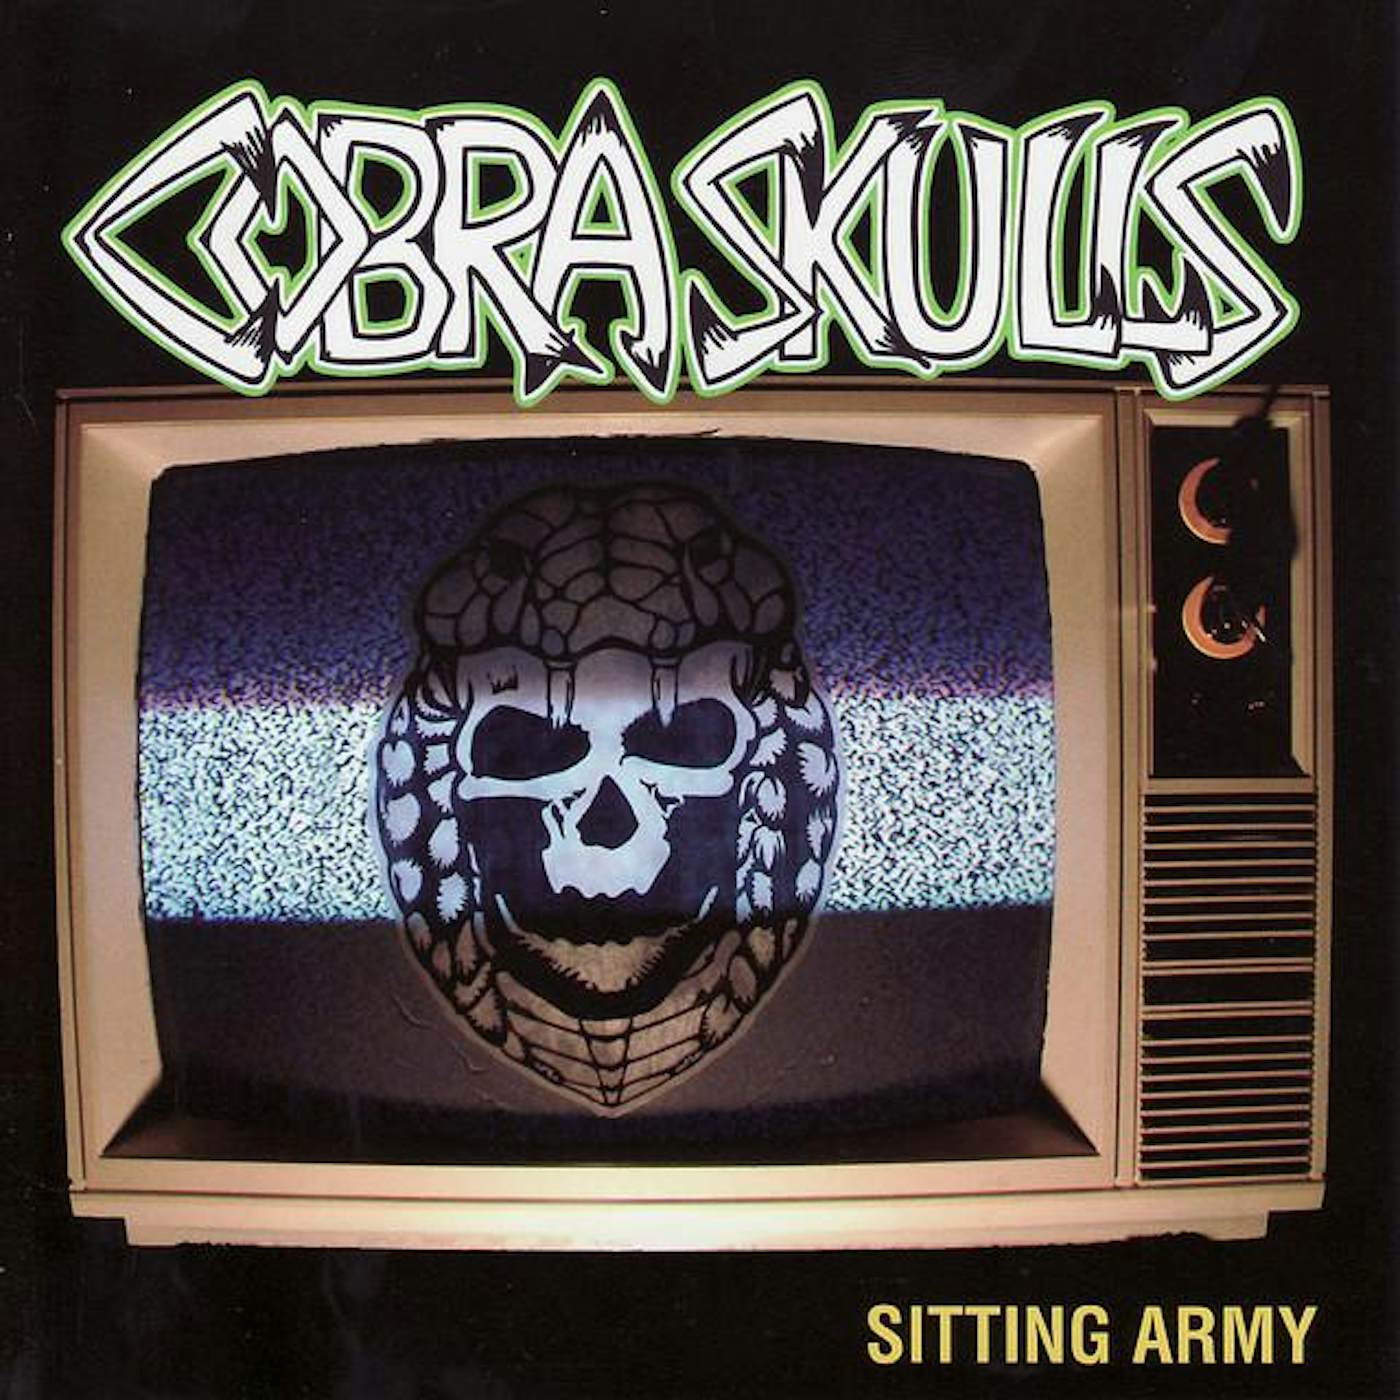 Cobra Skulls